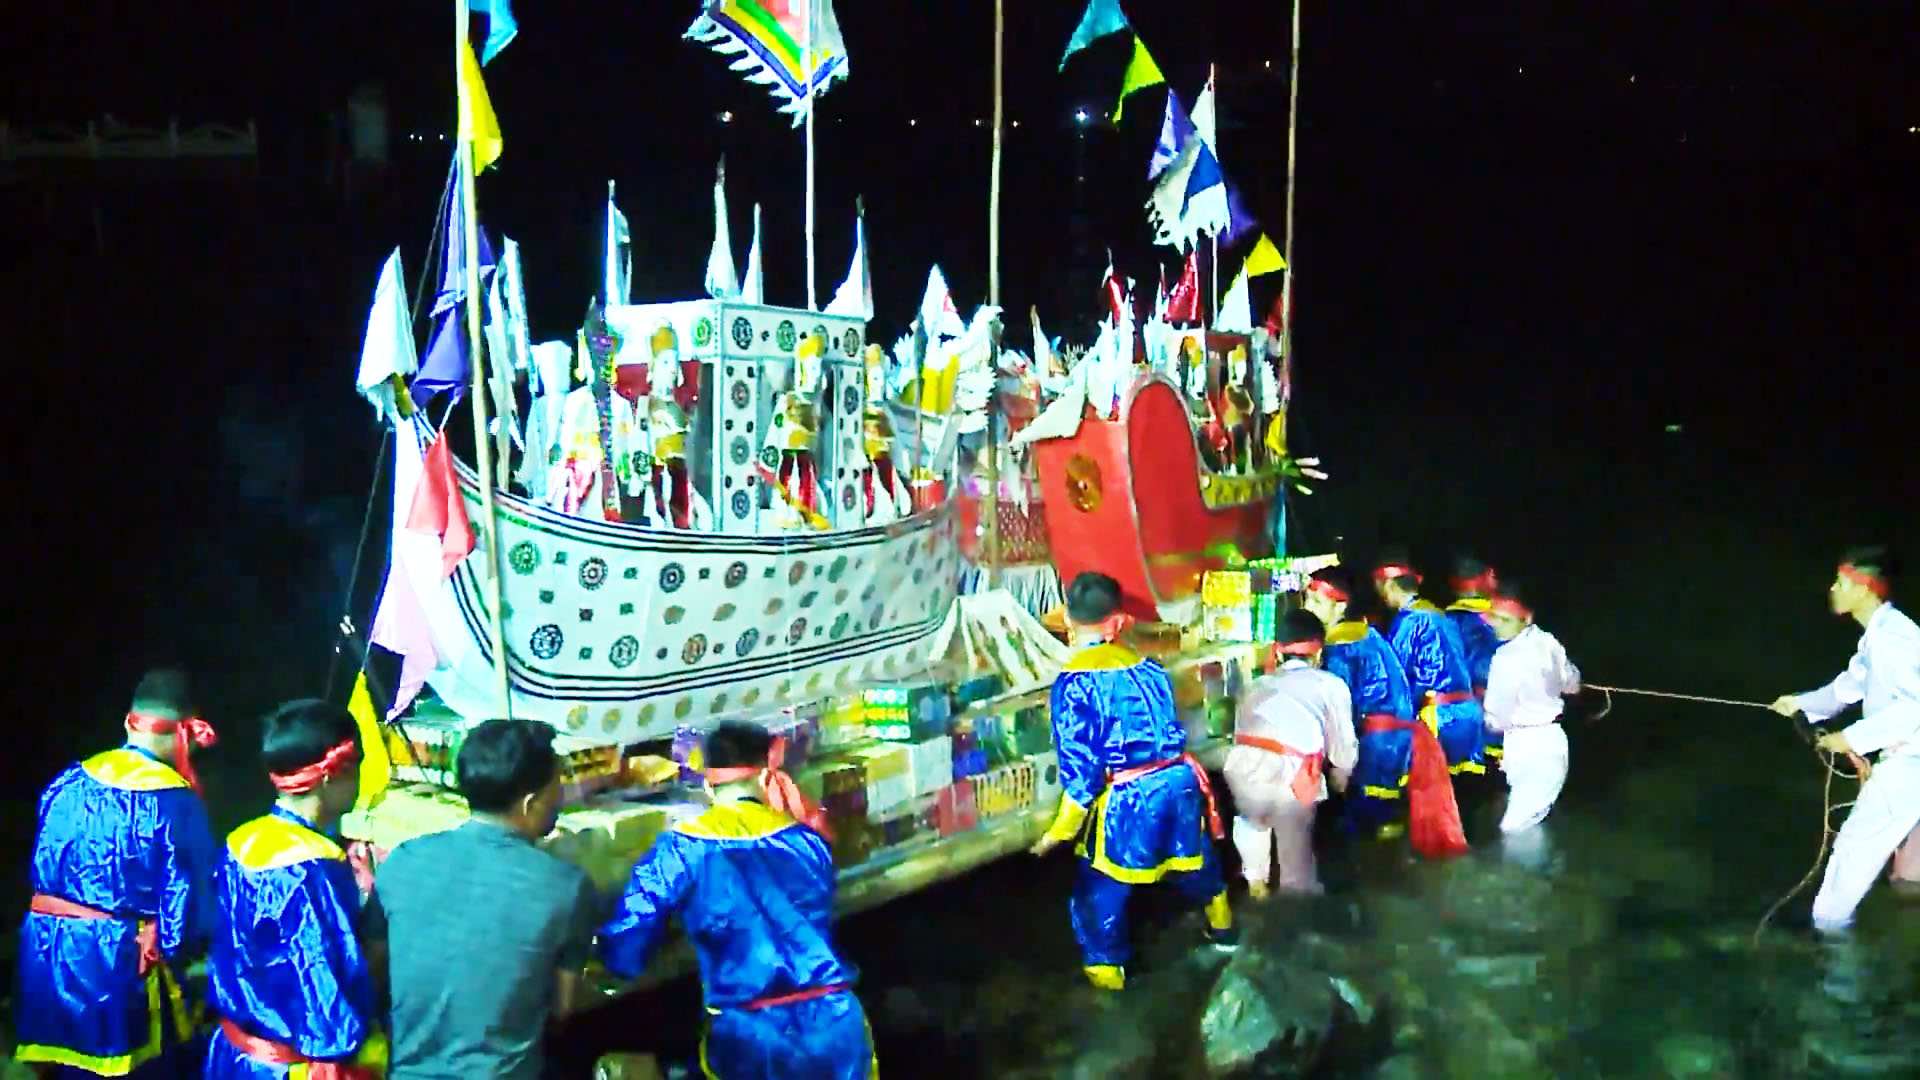 Thức đến 2 giờ sáng để xem thuyền giấy khổng lồ cúng lễ Nam Hải Thần Vương - 1